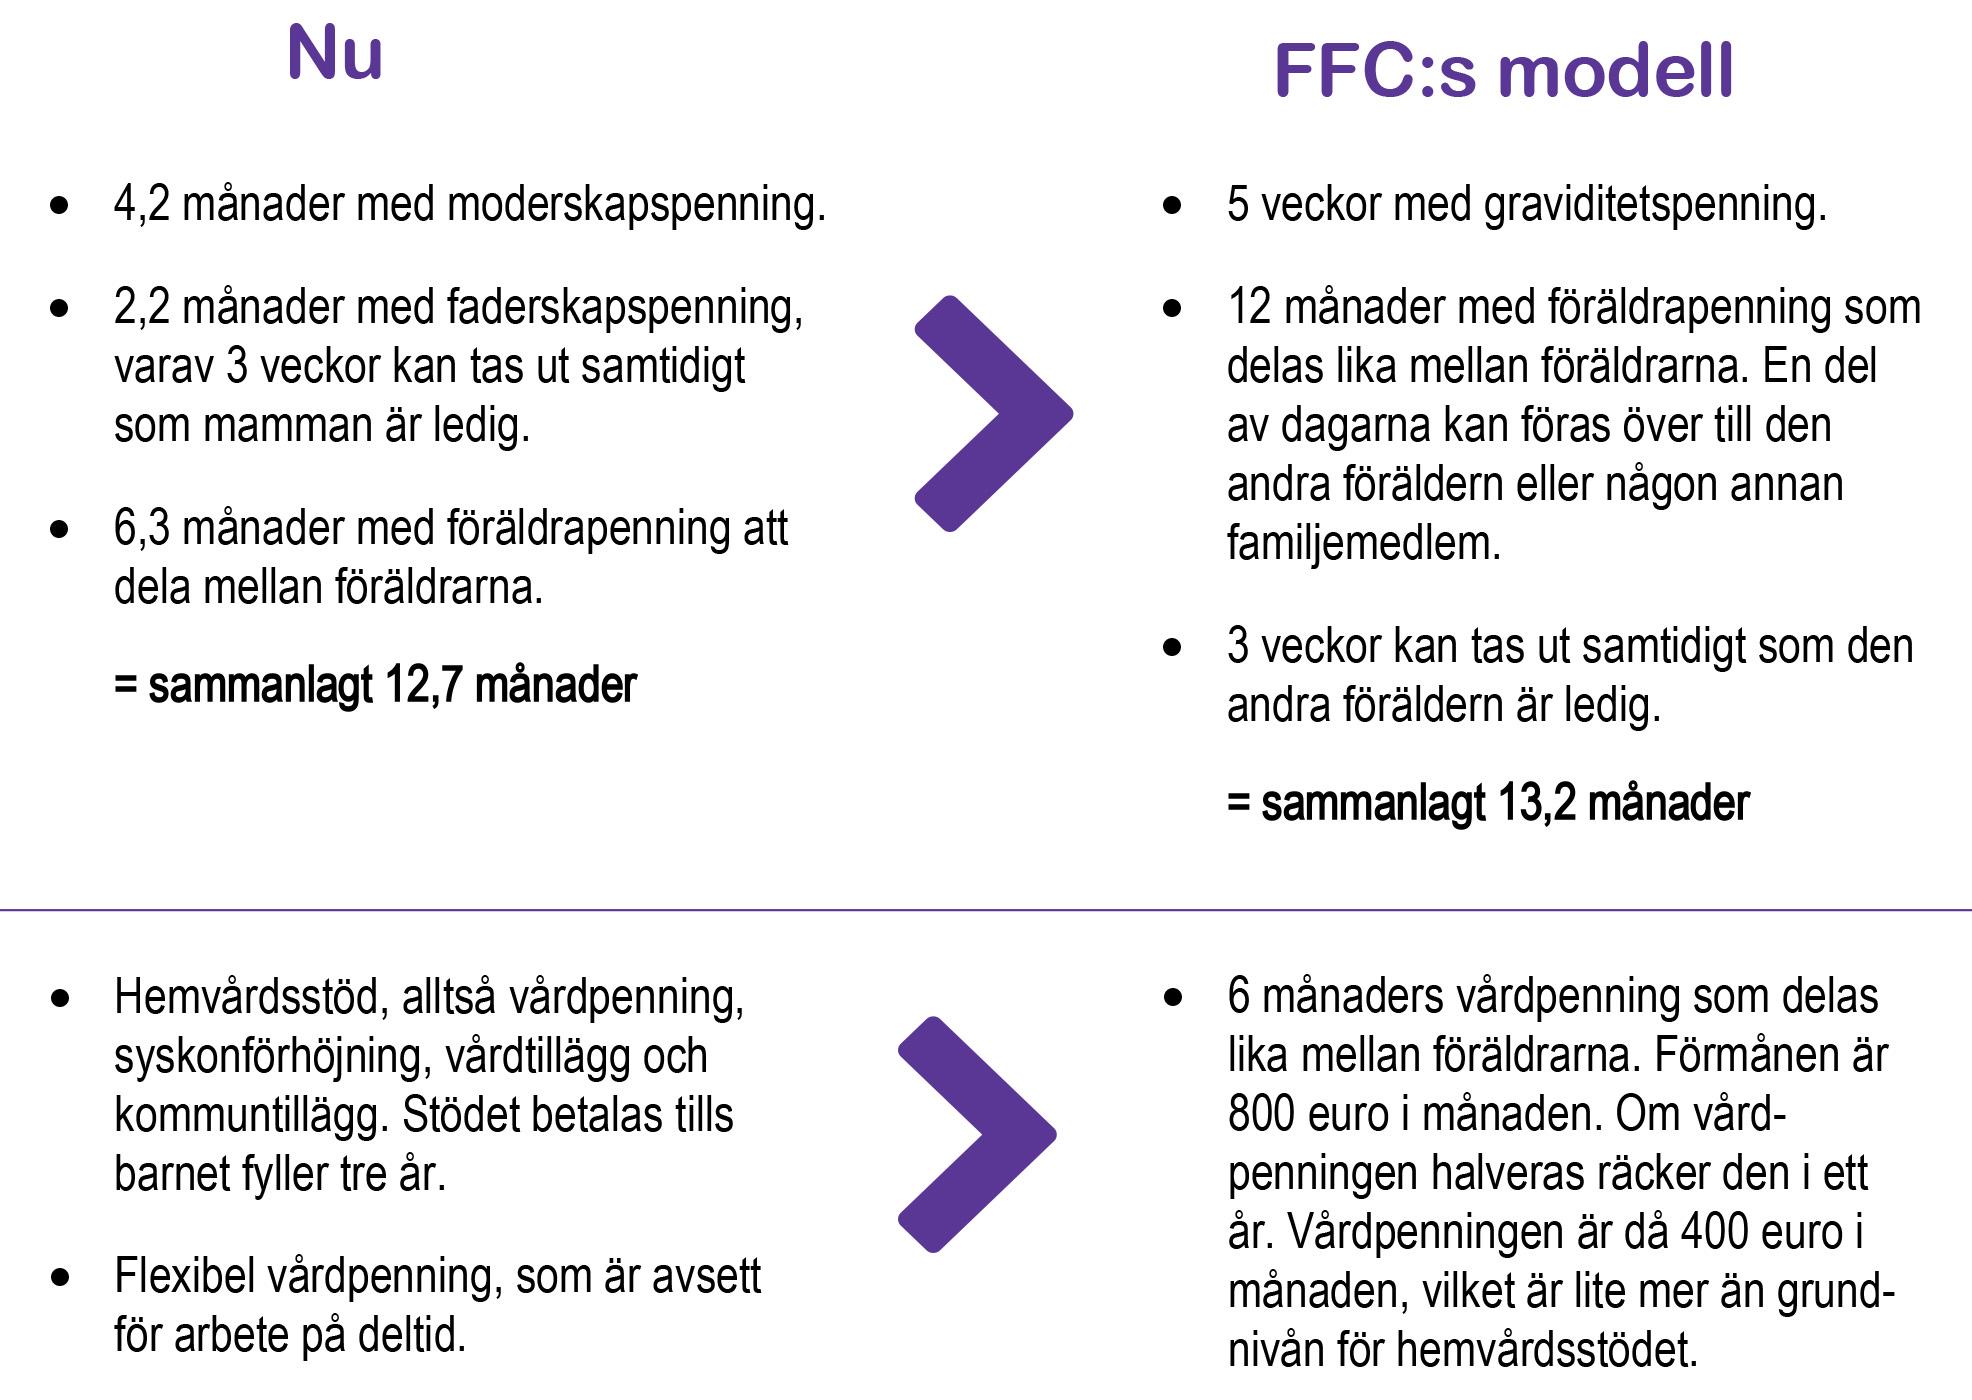 FFCs modell för familjeledigheterna i korthet